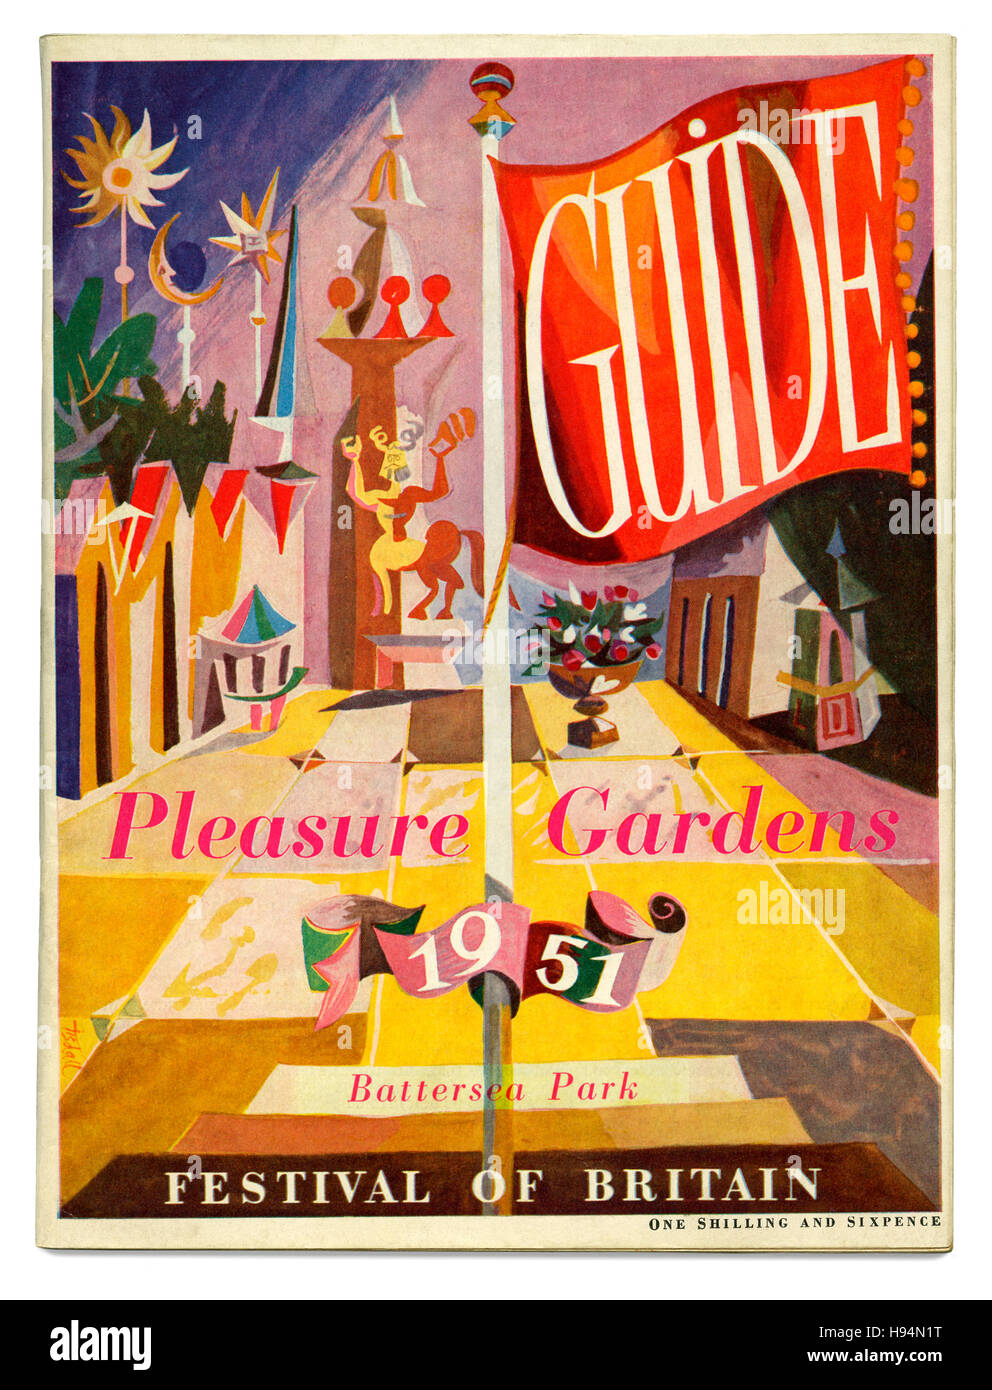 Coperchio per il Festival della Bretagna Pleasure Gardens guida, Parco di Battersea, Londra, 1951 Foto Stock